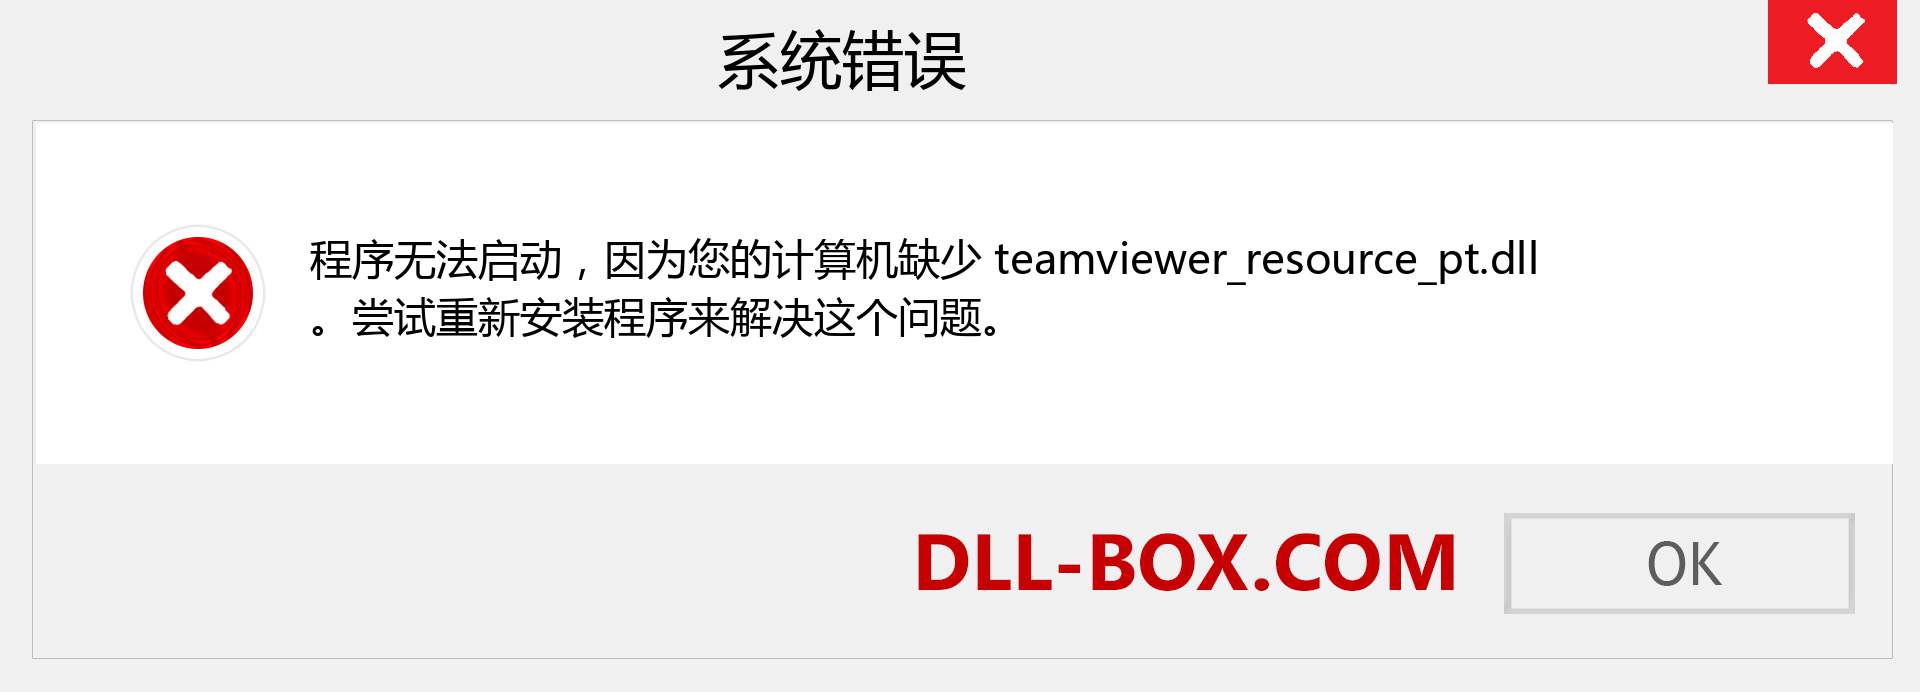 teamviewer_resource_pt.dll 文件丢失？。 适用于 Windows 7、8、10 的下载 - 修复 Windows、照片、图像上的 teamviewer_resource_pt dll 丢失错误